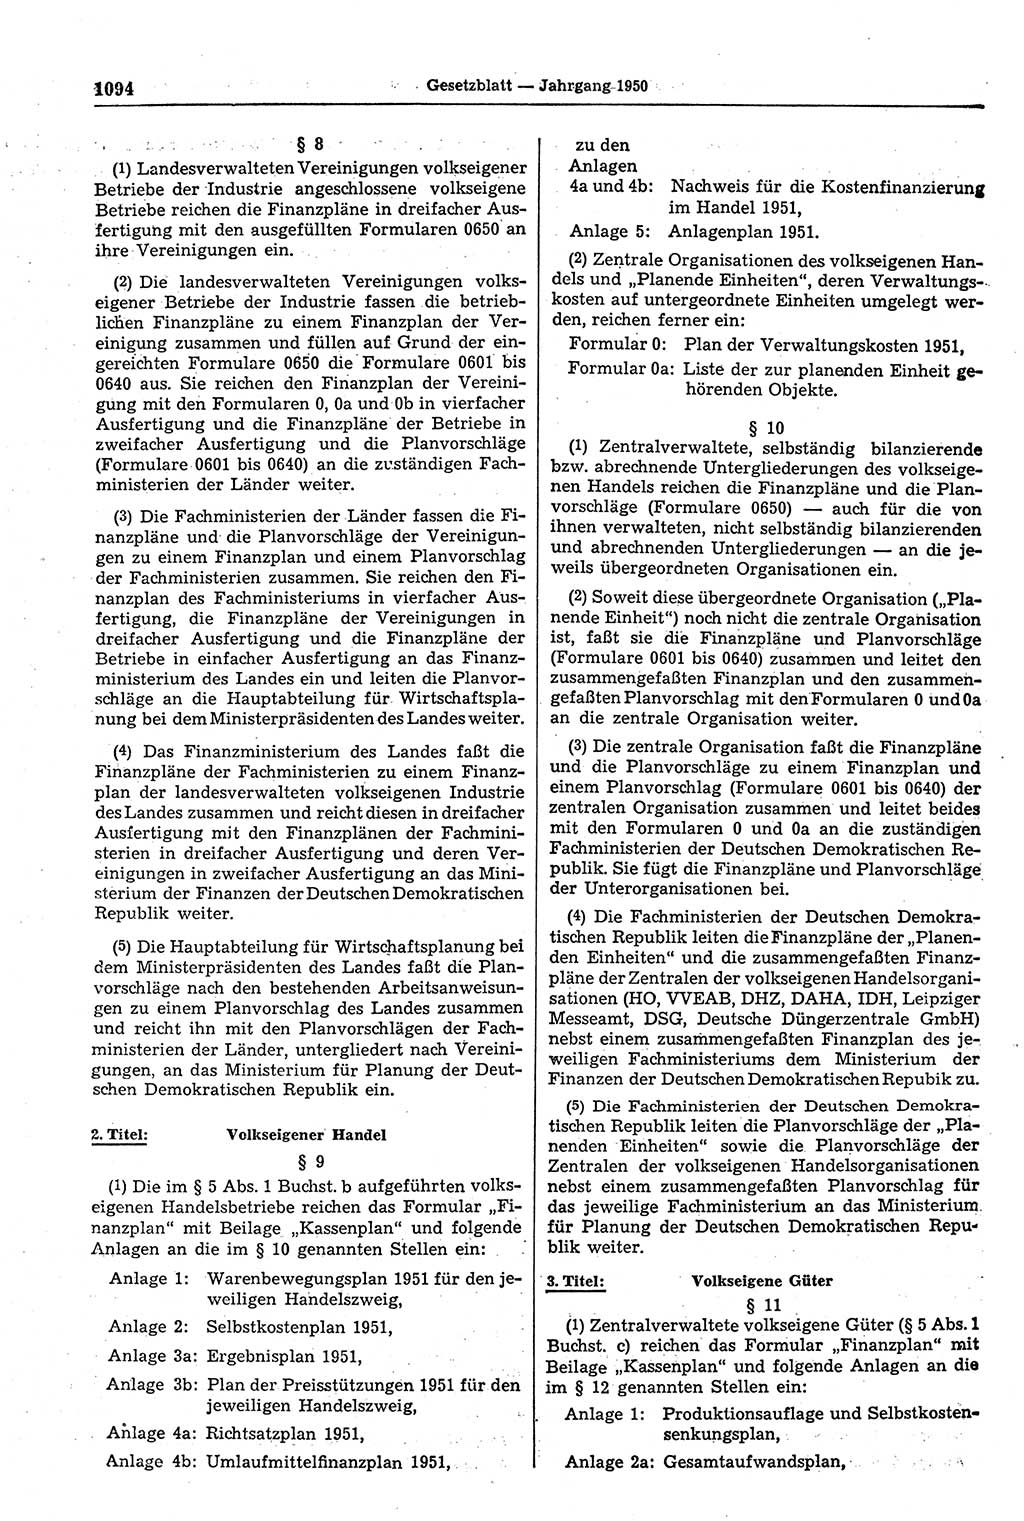 Gesetzblatt (GBl.) der Deutschen Demokratischen Republik (DDR) 1950, Seite 1094 (GBl. DDR 1950, S. 1094)